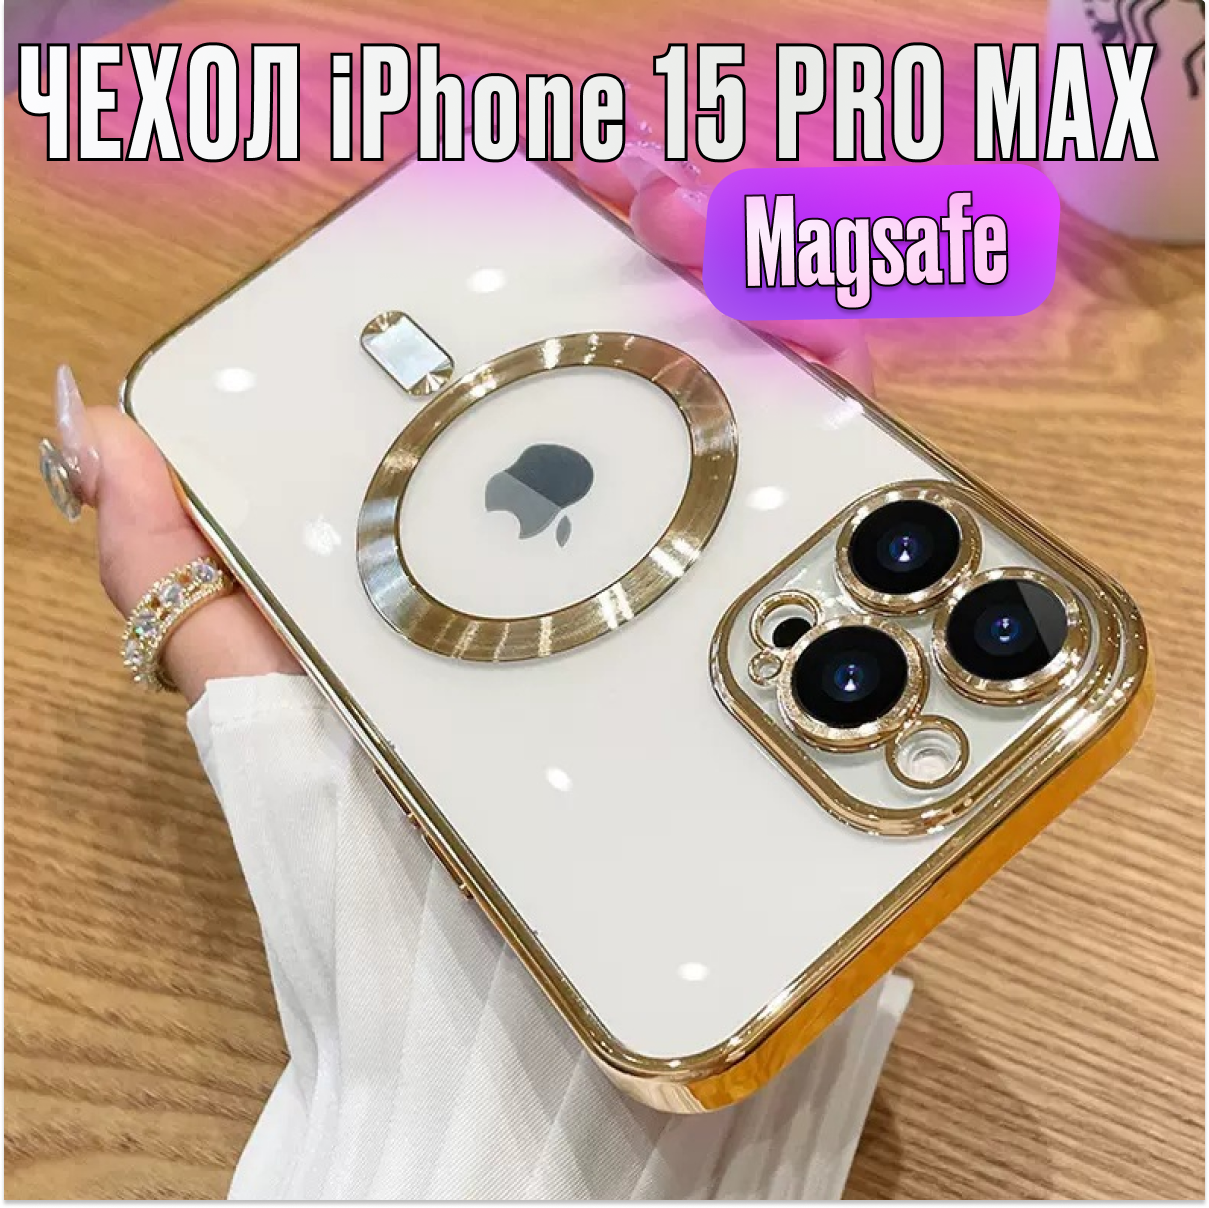 Магнитный силиконовый чехол на iPhone 15 PRO max магсейф (на айфон 15 про макс) с поддержкой Magsafe с магнитной зарядкой и защитой камеры, прозрачный с золотым орнаментом.